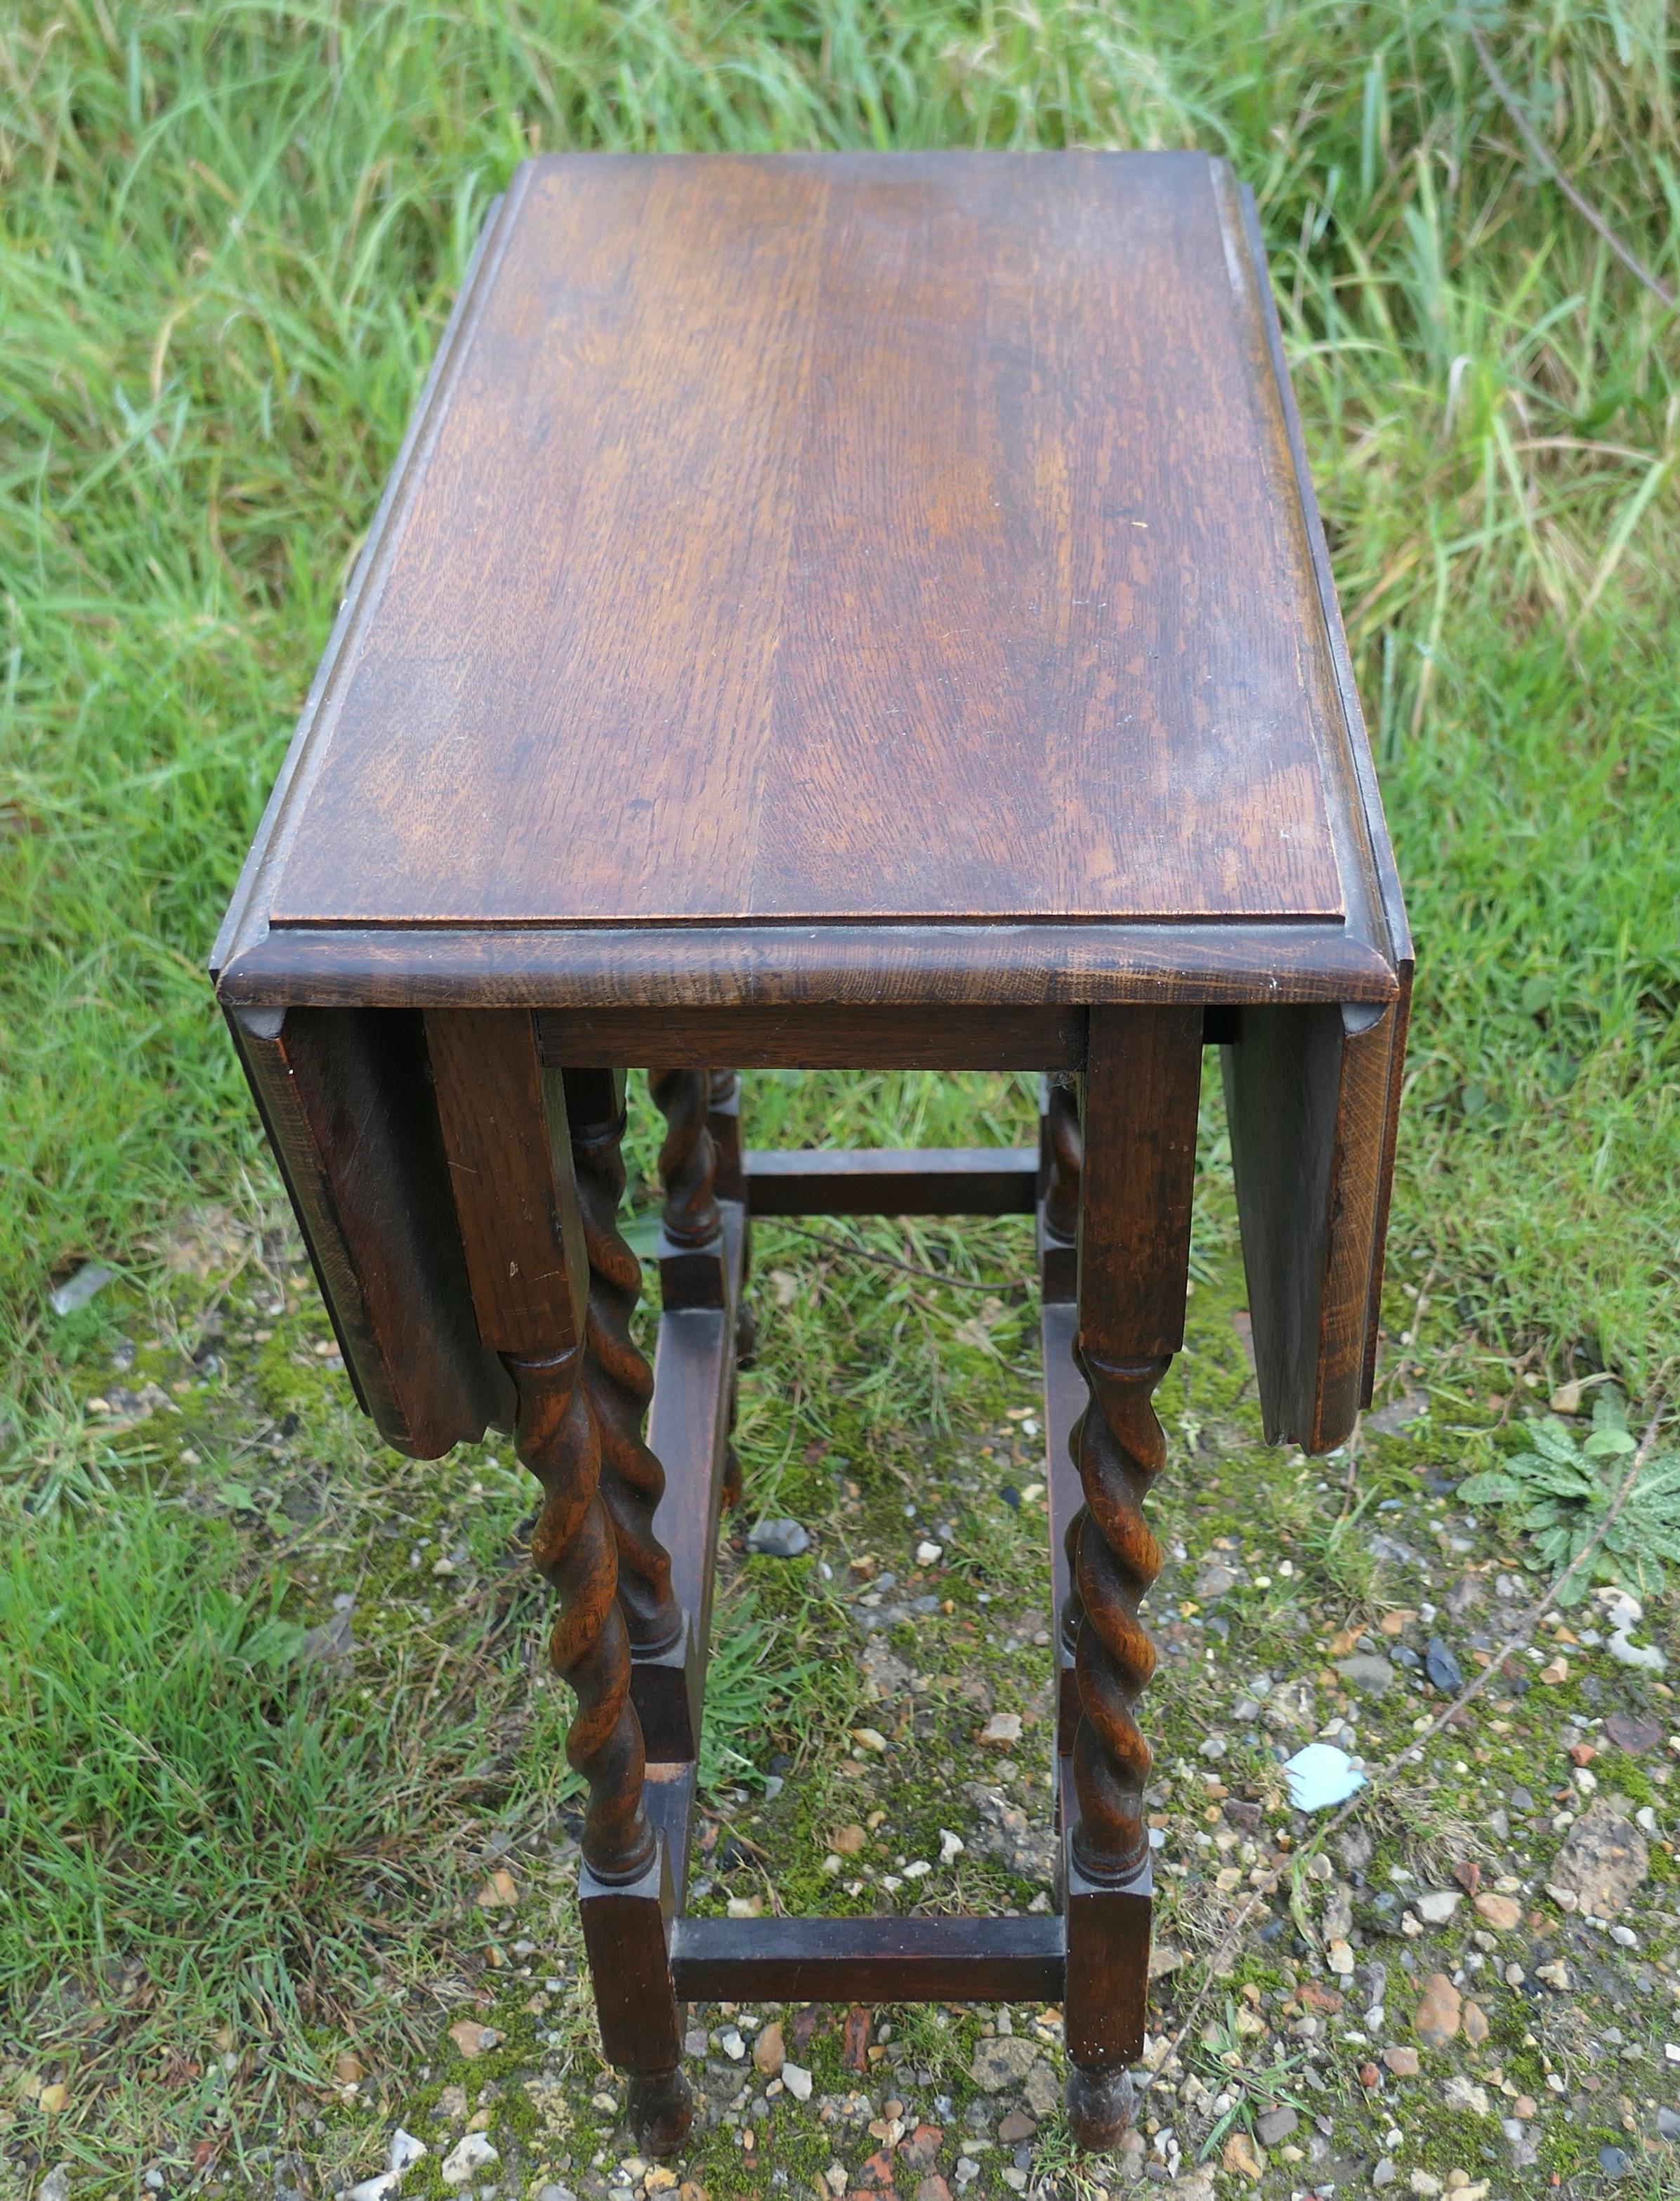 Eine gute solide Eiche viktorianischen Tor Bein Tisch


Der Tisch ist aus massivem Eichenholz gefertigt und hat elegante, sauber gedrechselte Gerstenkornbeine und Eichenholz-Querstreben. Der Tisch hat eine profilierte Kante und eine hübsche